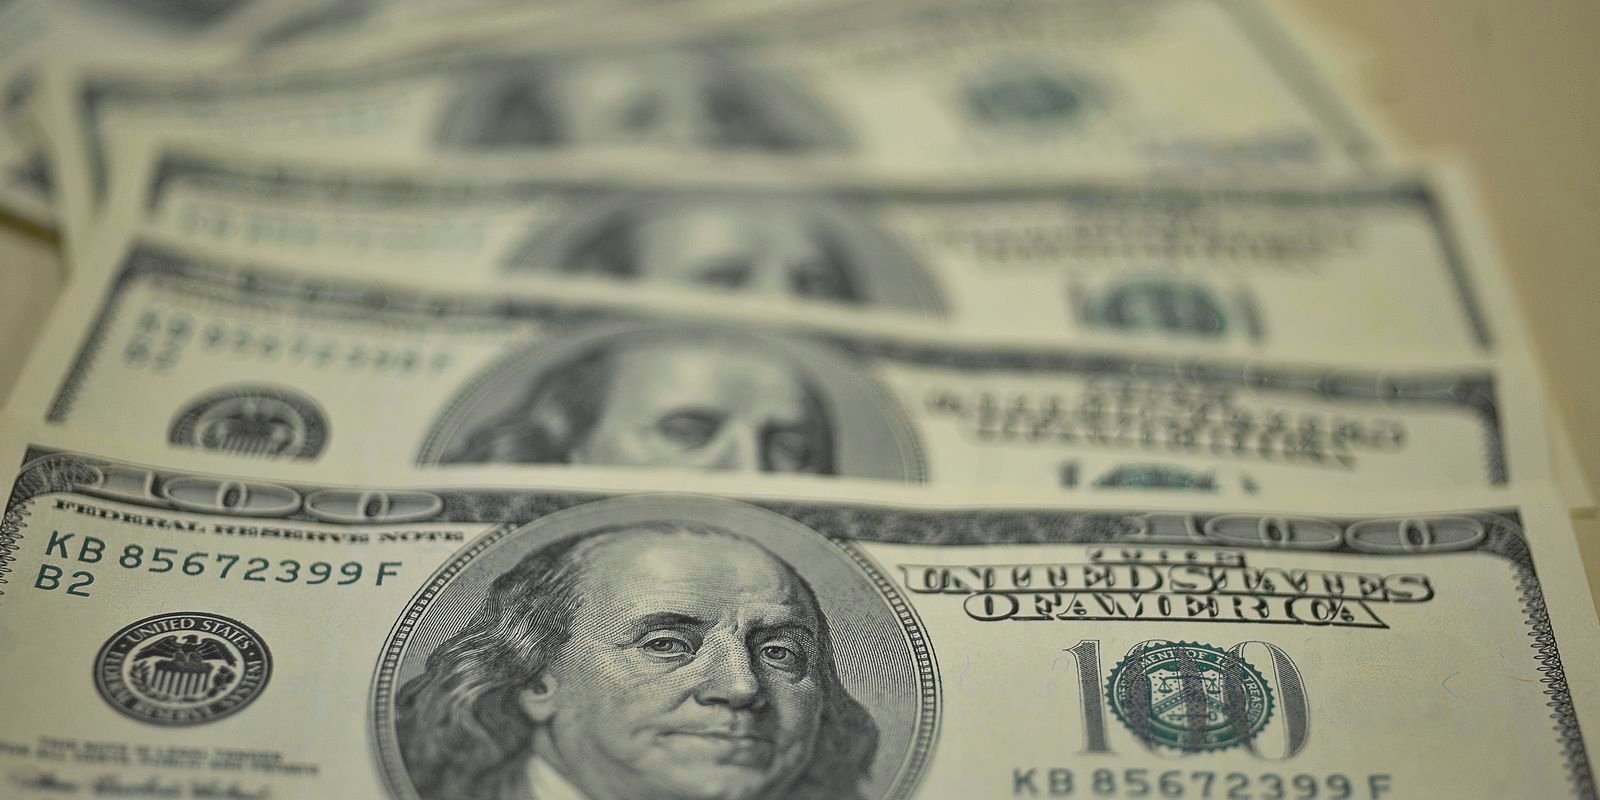 Contas externas têm saldo negativo de US$ 3,4 bilhões em maio